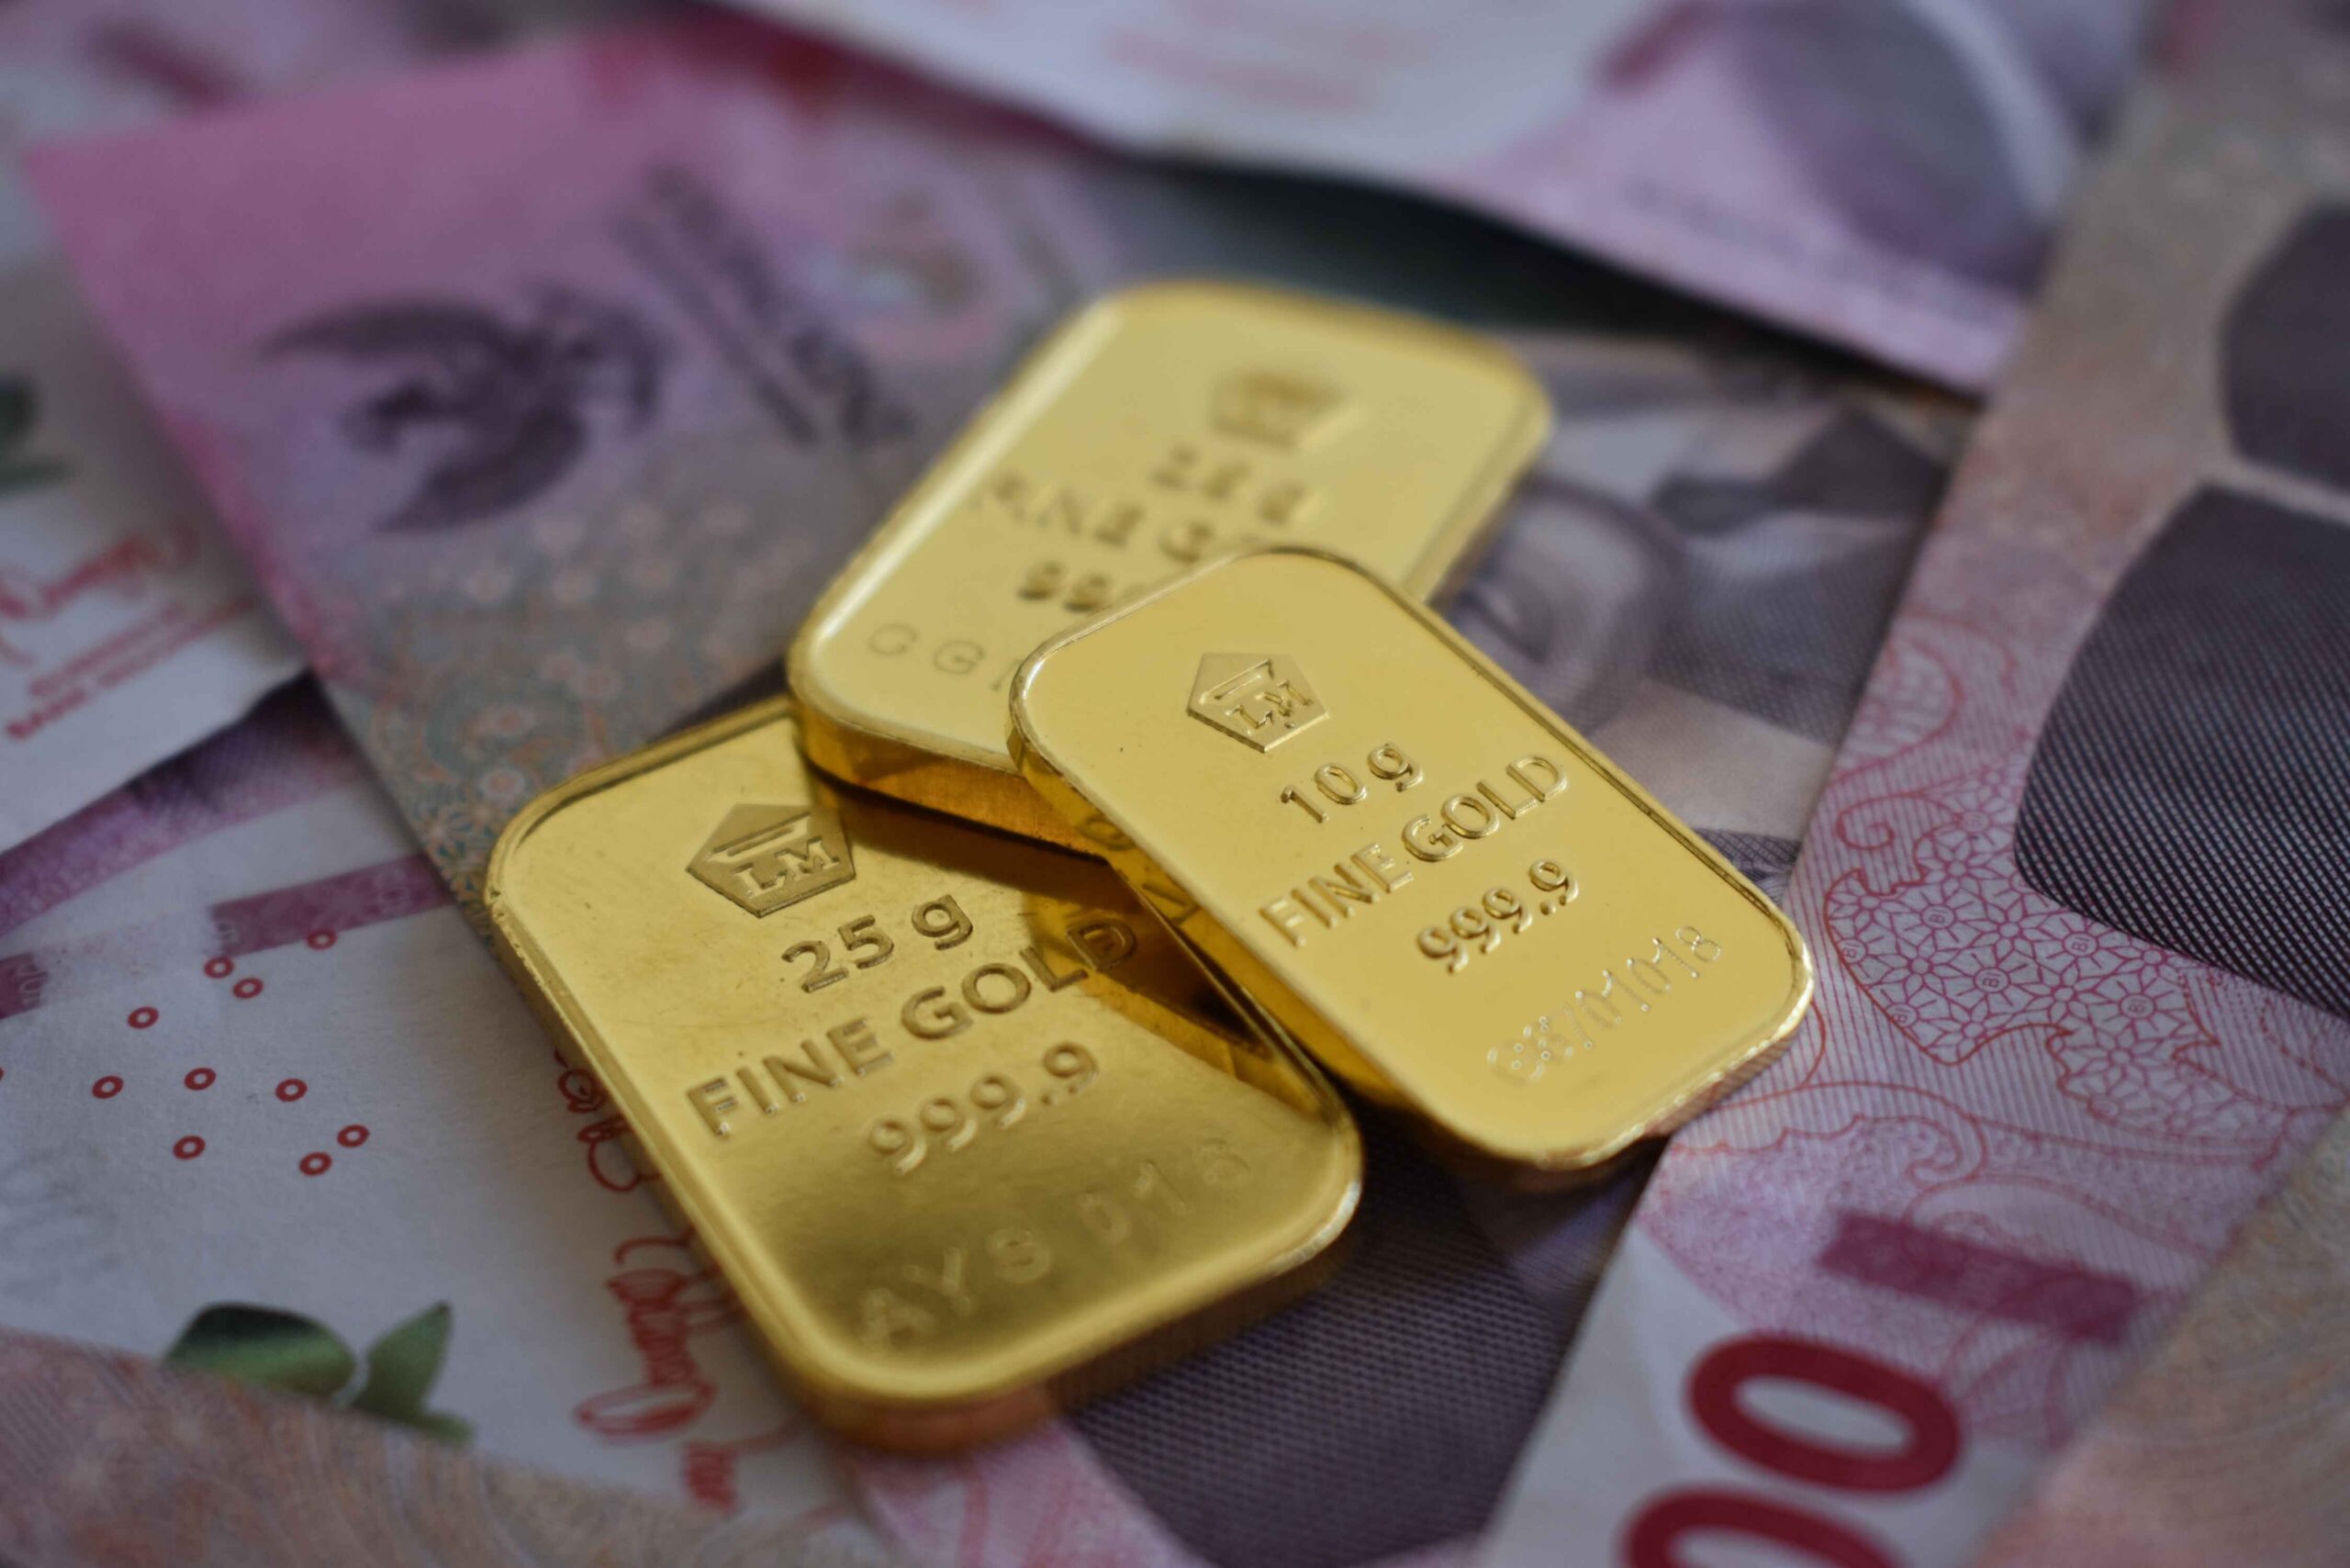 Swiss Green Gold ETP (AUCO2 ETP) replikerar resultatet för dess underliggande tillgång – hållbart guld. Den är lämplig för ESG-inriktade investerare som söker exponering mot fysiskt guld – den äldsta formen av valuta och värdeförråd som fortfarande används idag. Det underliggande guldet är ansvarsfullt anskaffat och certifierat "Carbon Neutral". Investerare kan begära fysisk leverans av präglade guldtackor under inlösen.